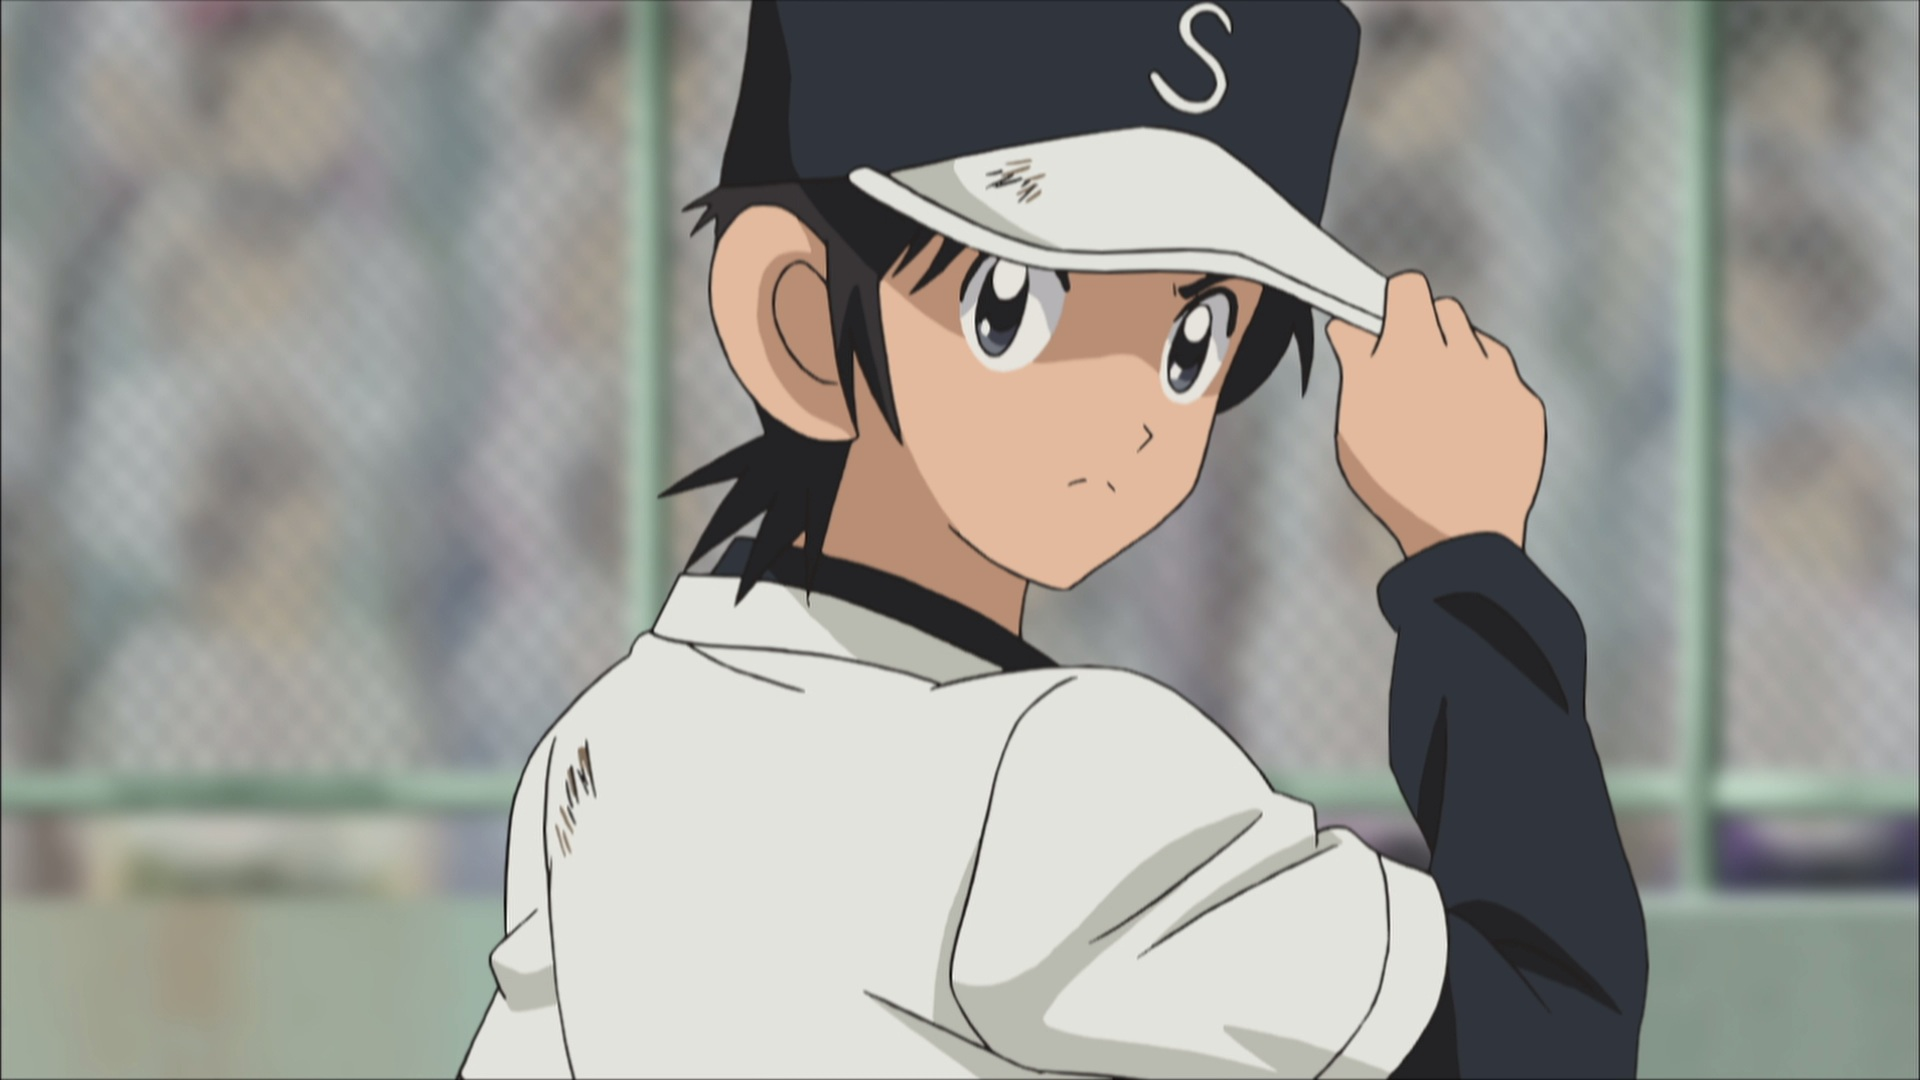 Baseball anime shows